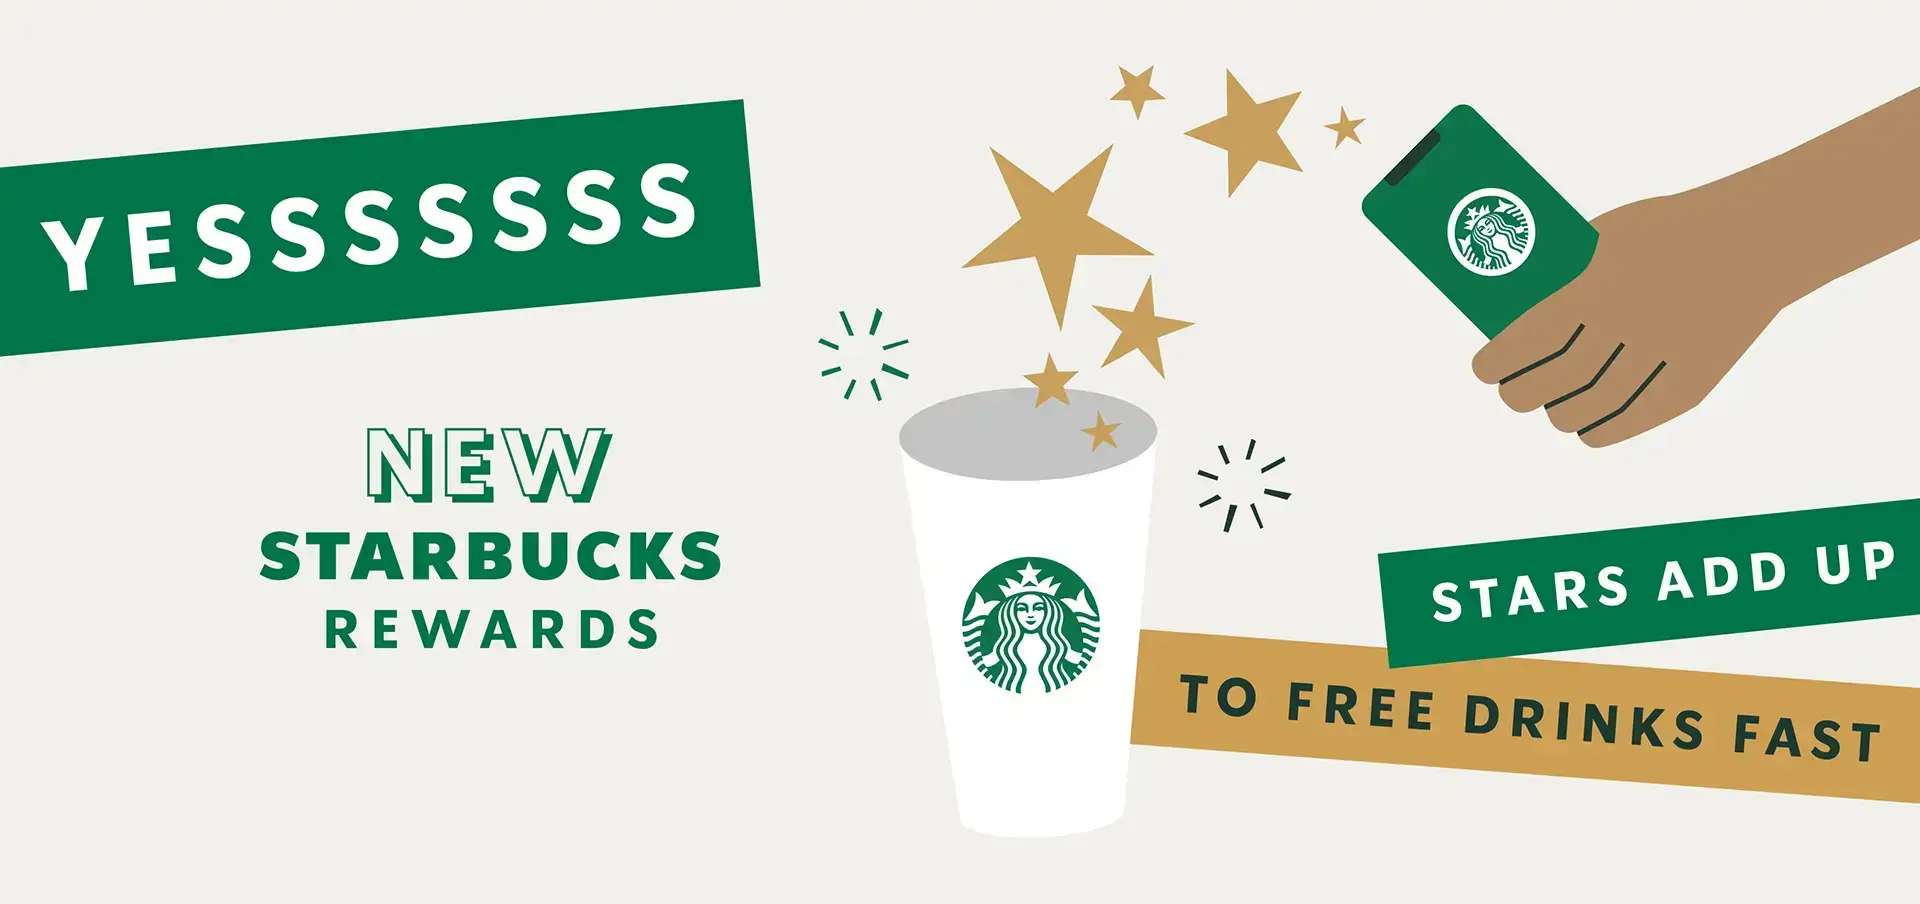 Starbucks rewards advertisement